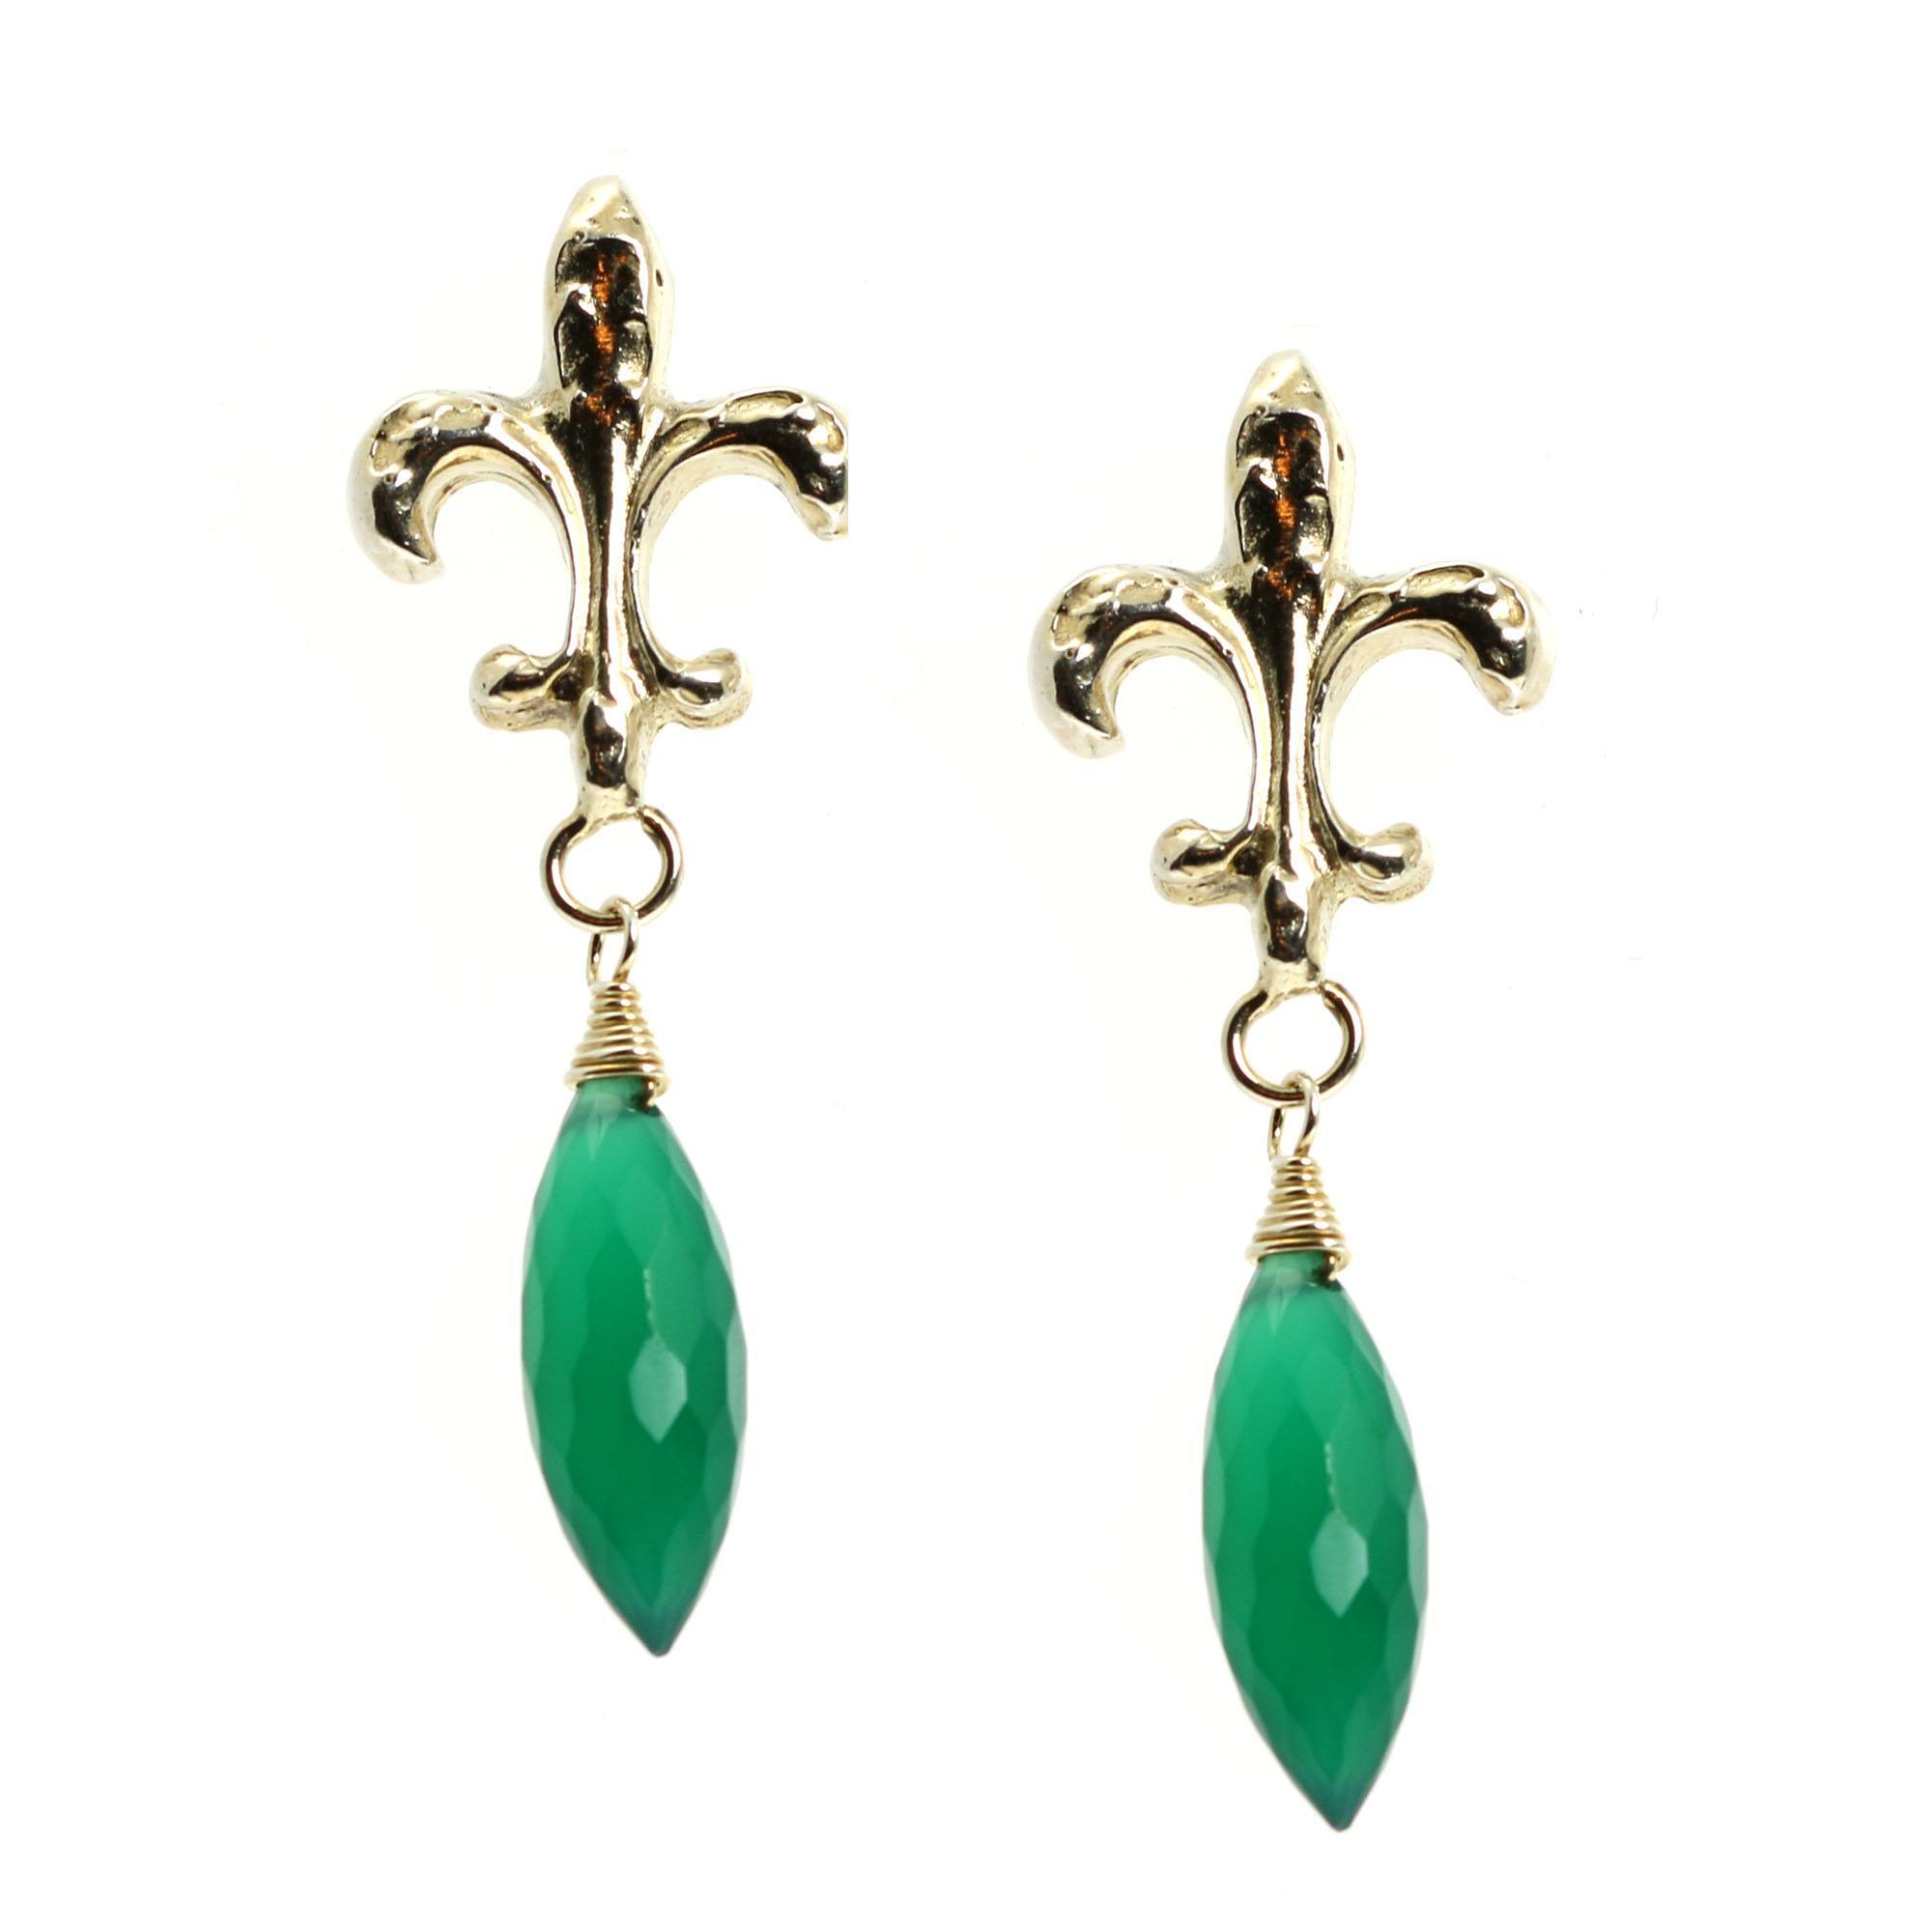 Shape of Green Onyx Sterling Silver Fleur-de-lis Earrings